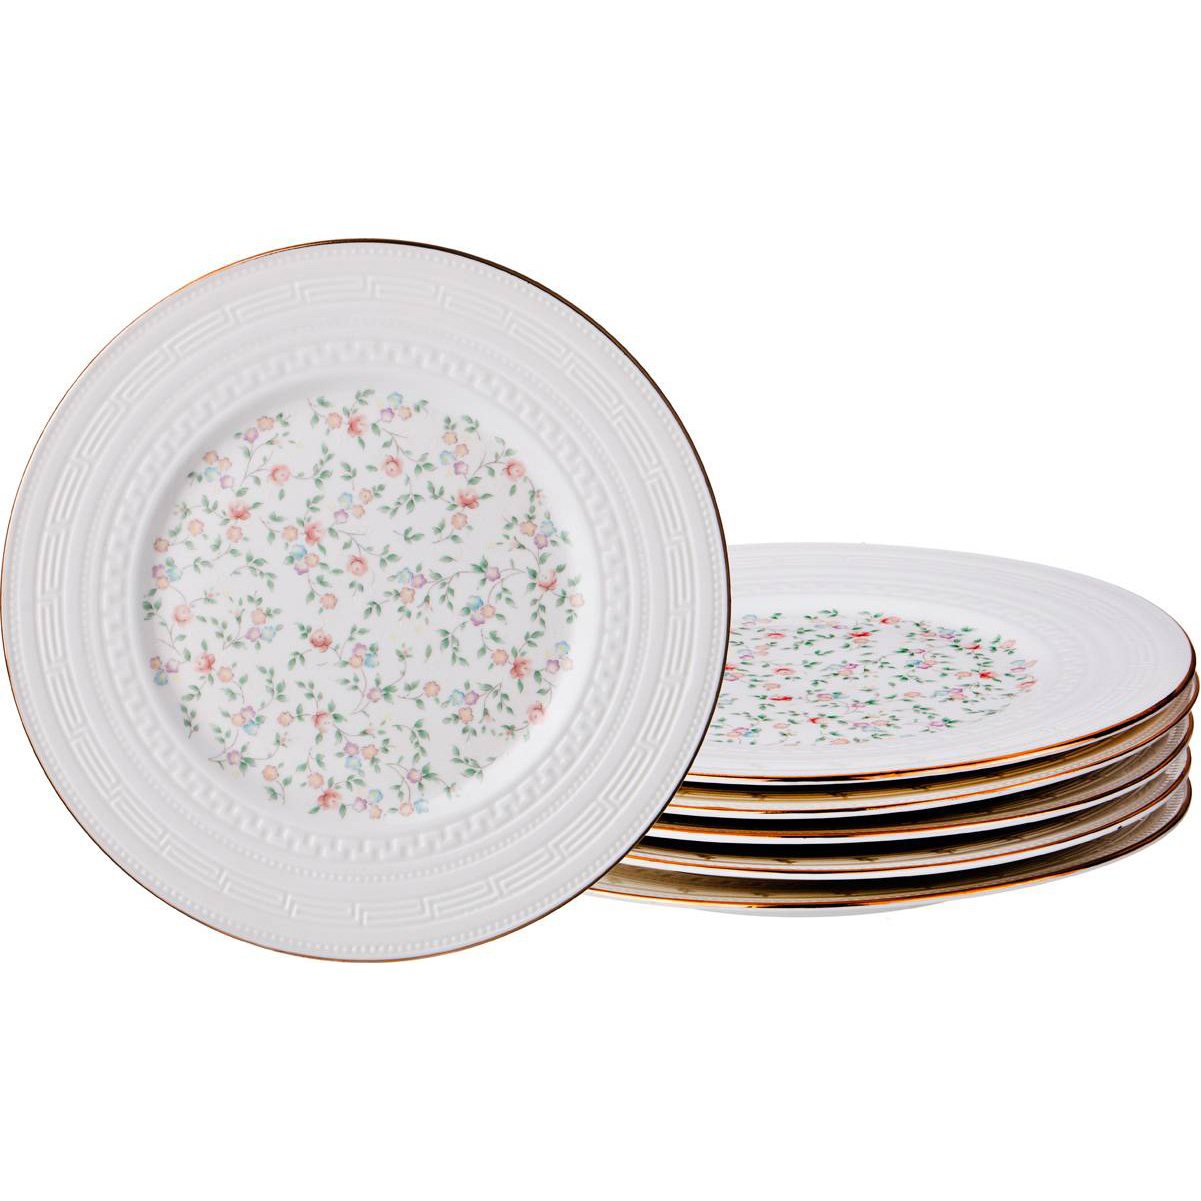 Набор тарелок Фабьен (19 см - 6 шт), размер 19 см - 6 шт